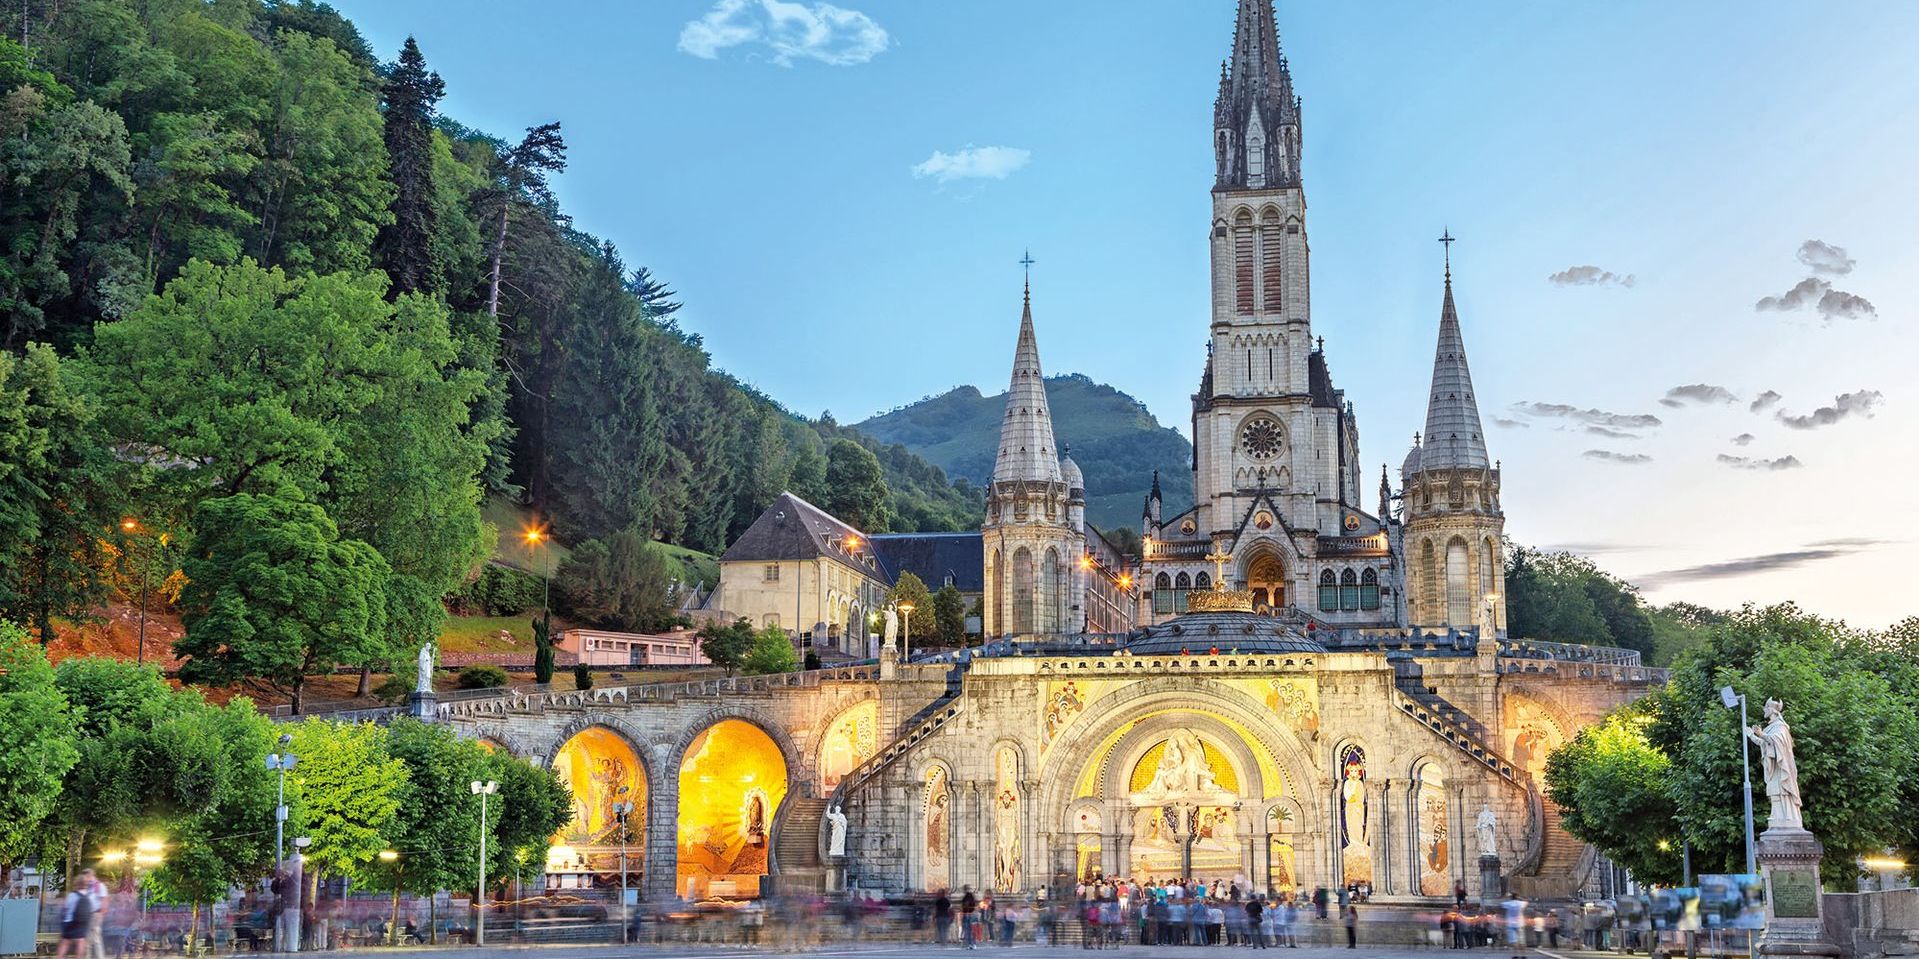 Die Rosenkranz-Basilika in Lourdes  Das Kirchengebäude, im neobyzantinischen Stil errichtet, fasst bis zu 1500 Personen und ist das drittälteste sakrale Bauwerk im Wallfahrtsareal. 